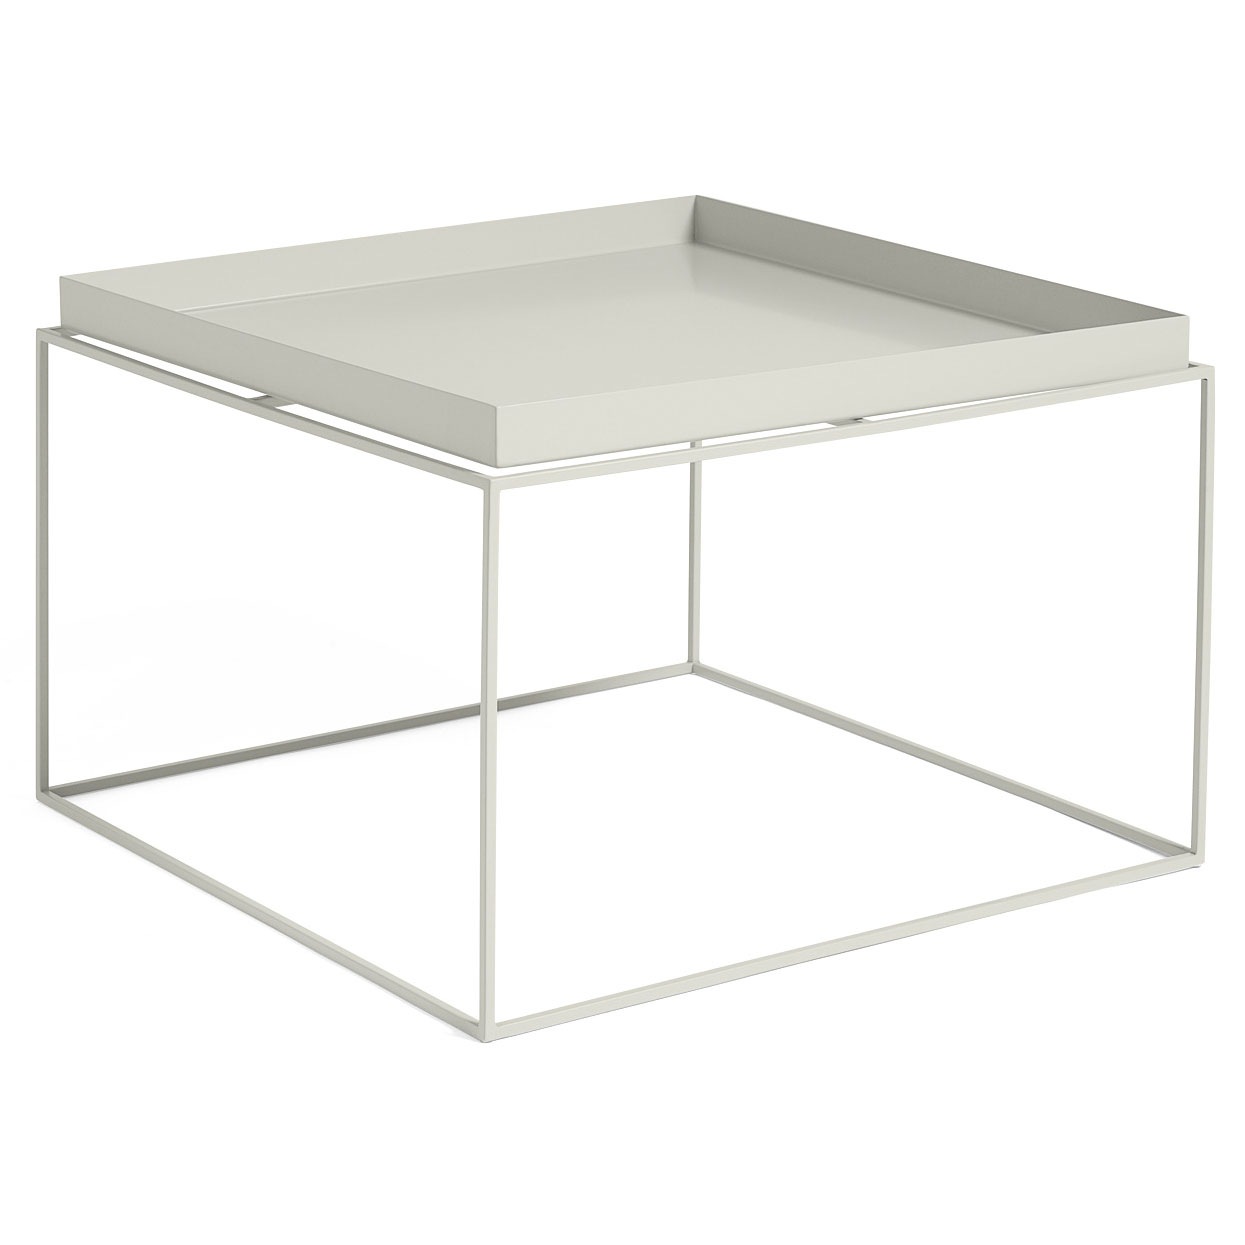 Tarjoilupöytä 60x60 cm, Warm Grey